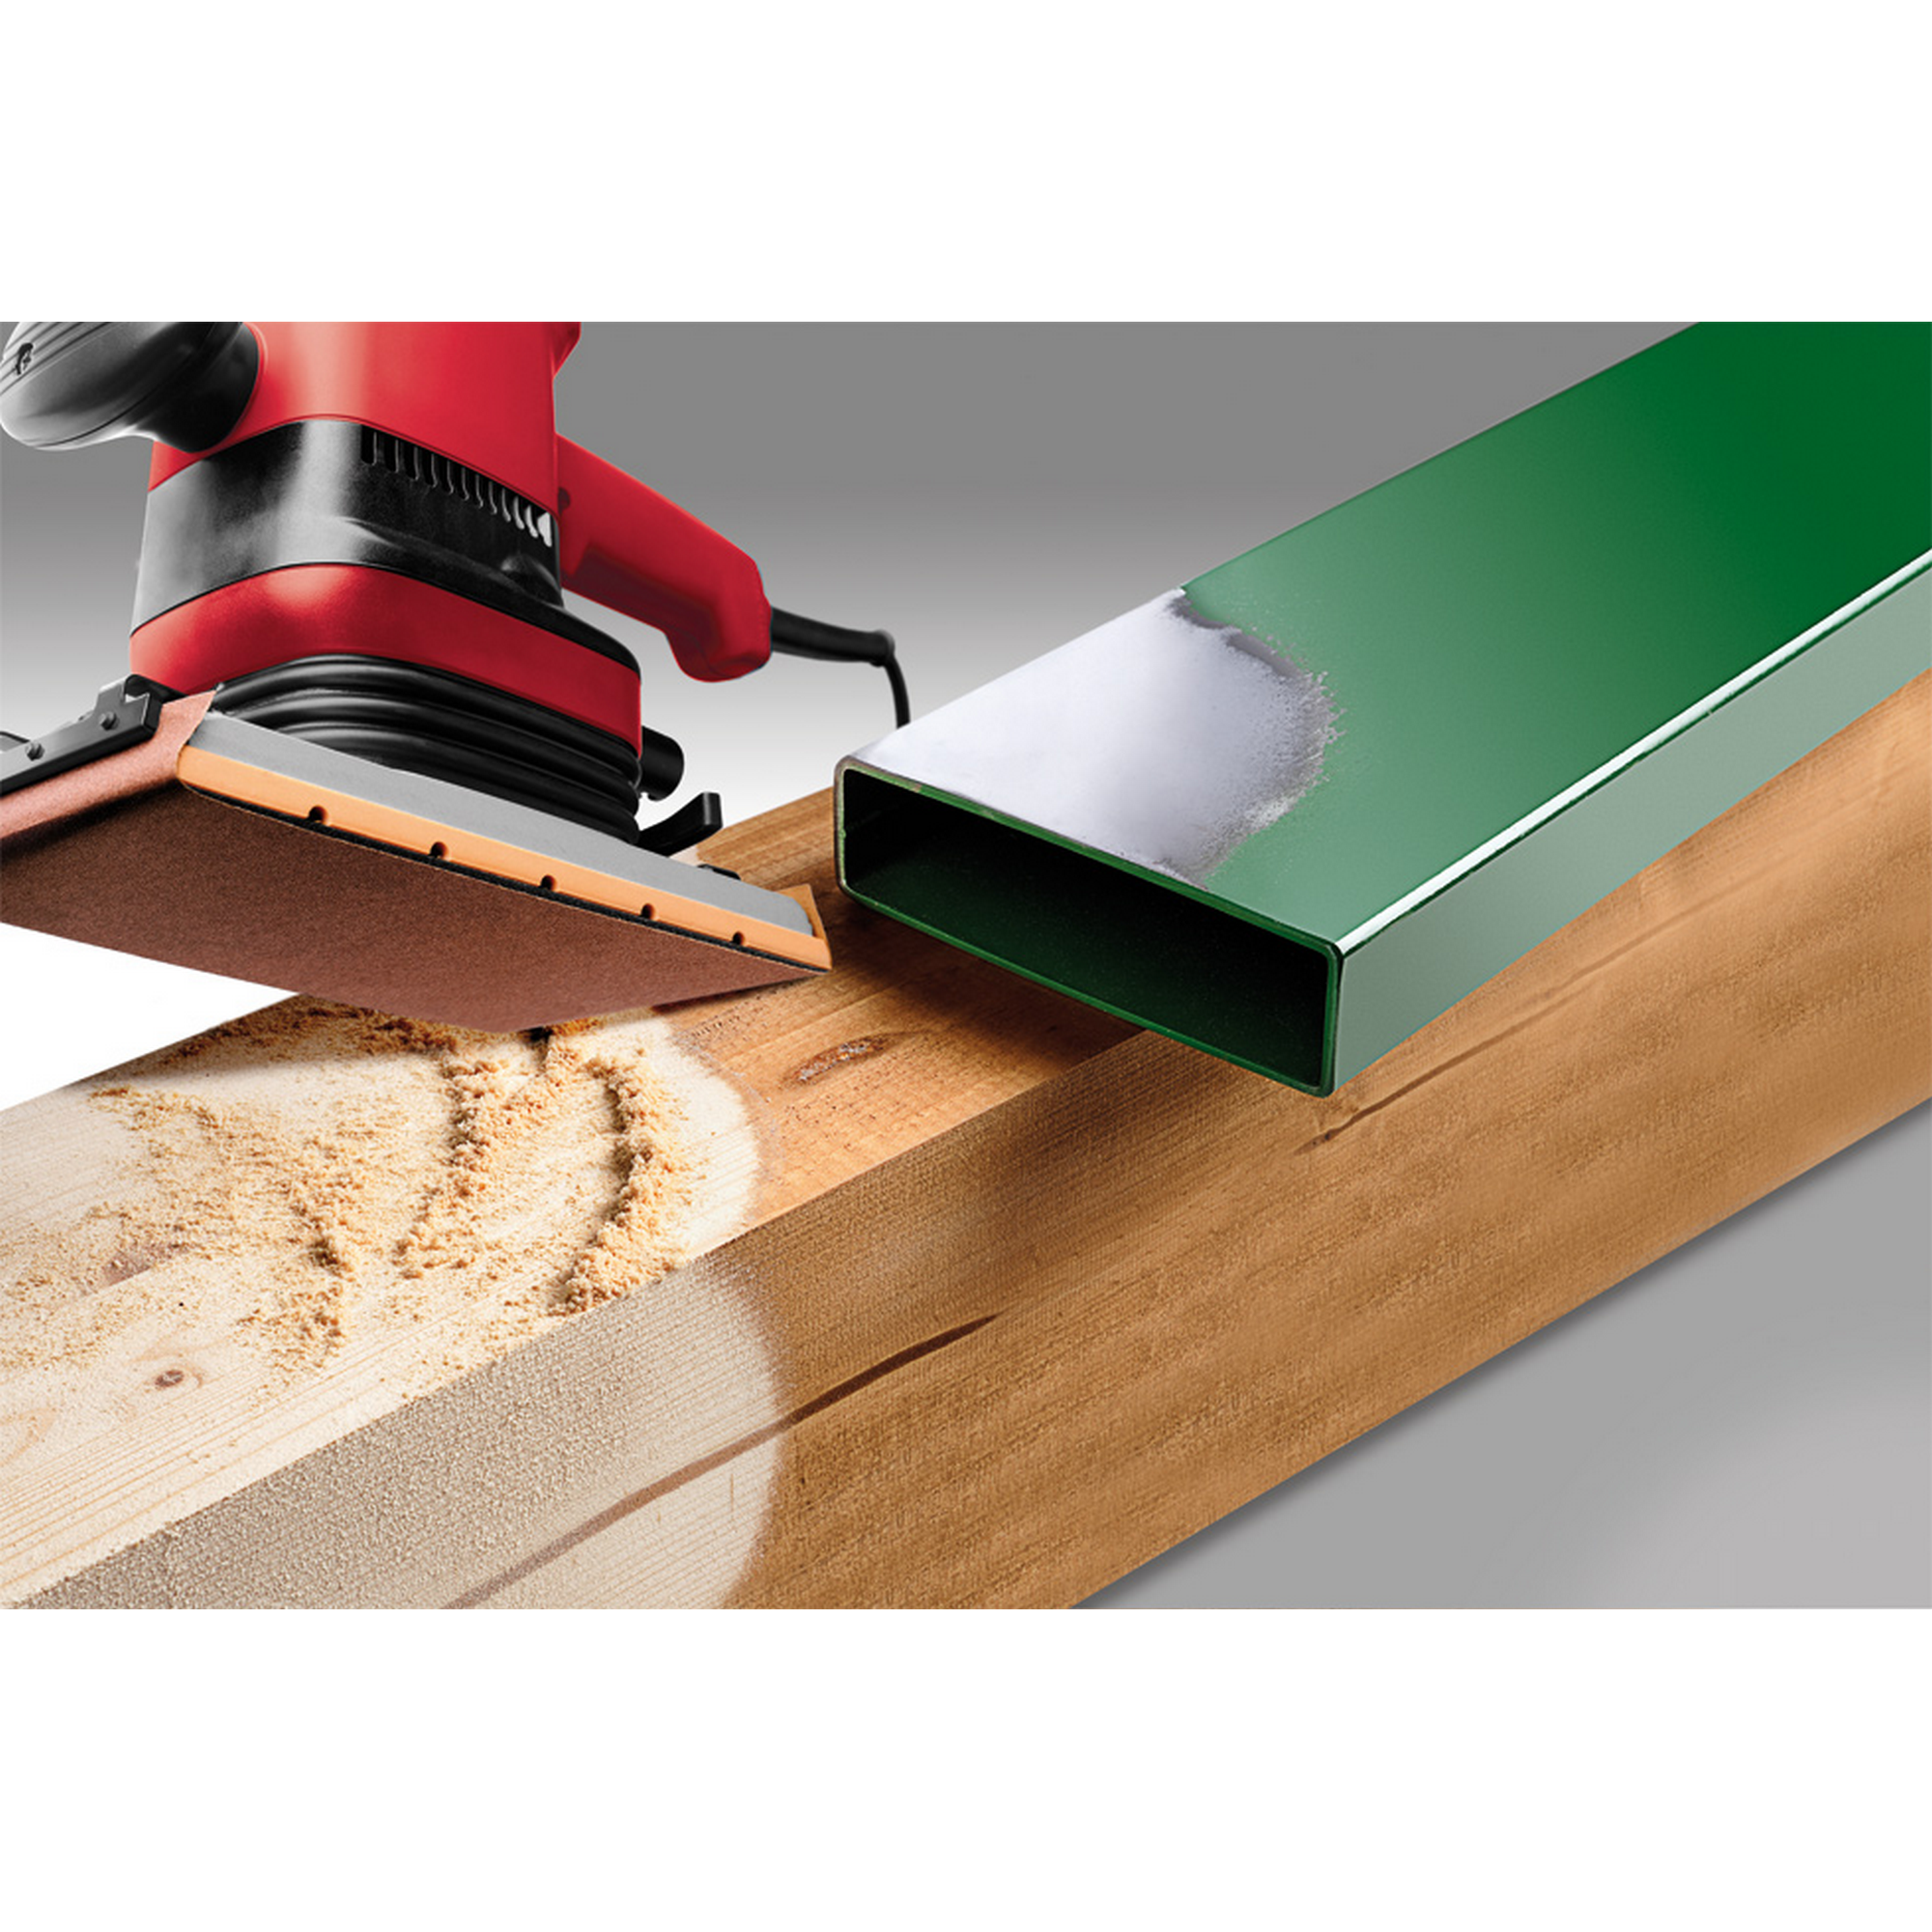 Schleifstreifen 'Holz & Metall' 115 x 280 mm K80 10 Stück + product picture